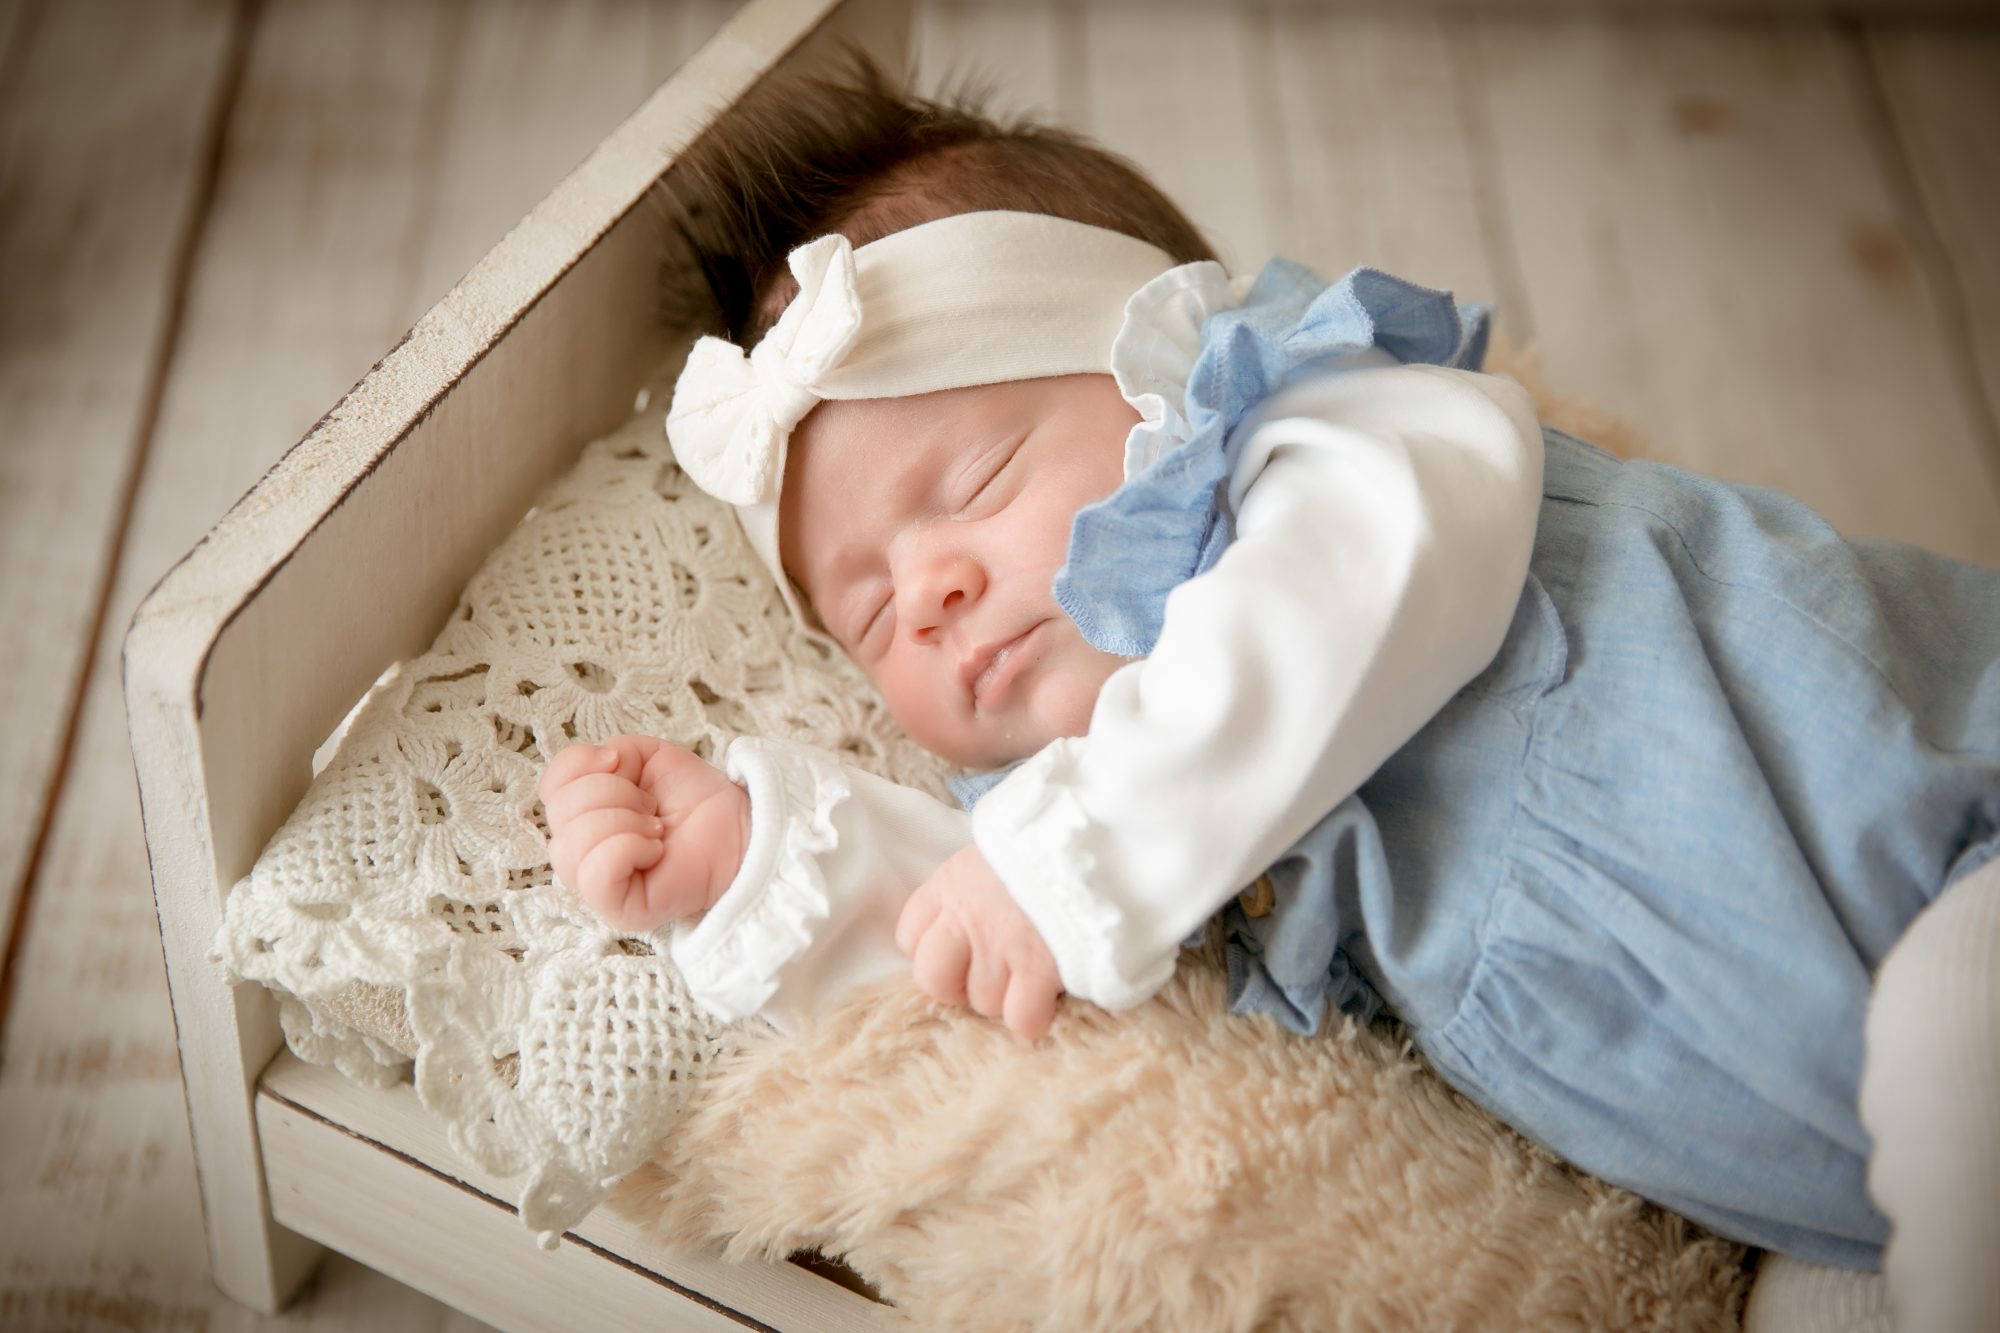 baby fotoshooting newborn fotostudio bilifotos.ch luzern baby foto zeigt wie baby im kleinen weissen bett liegt